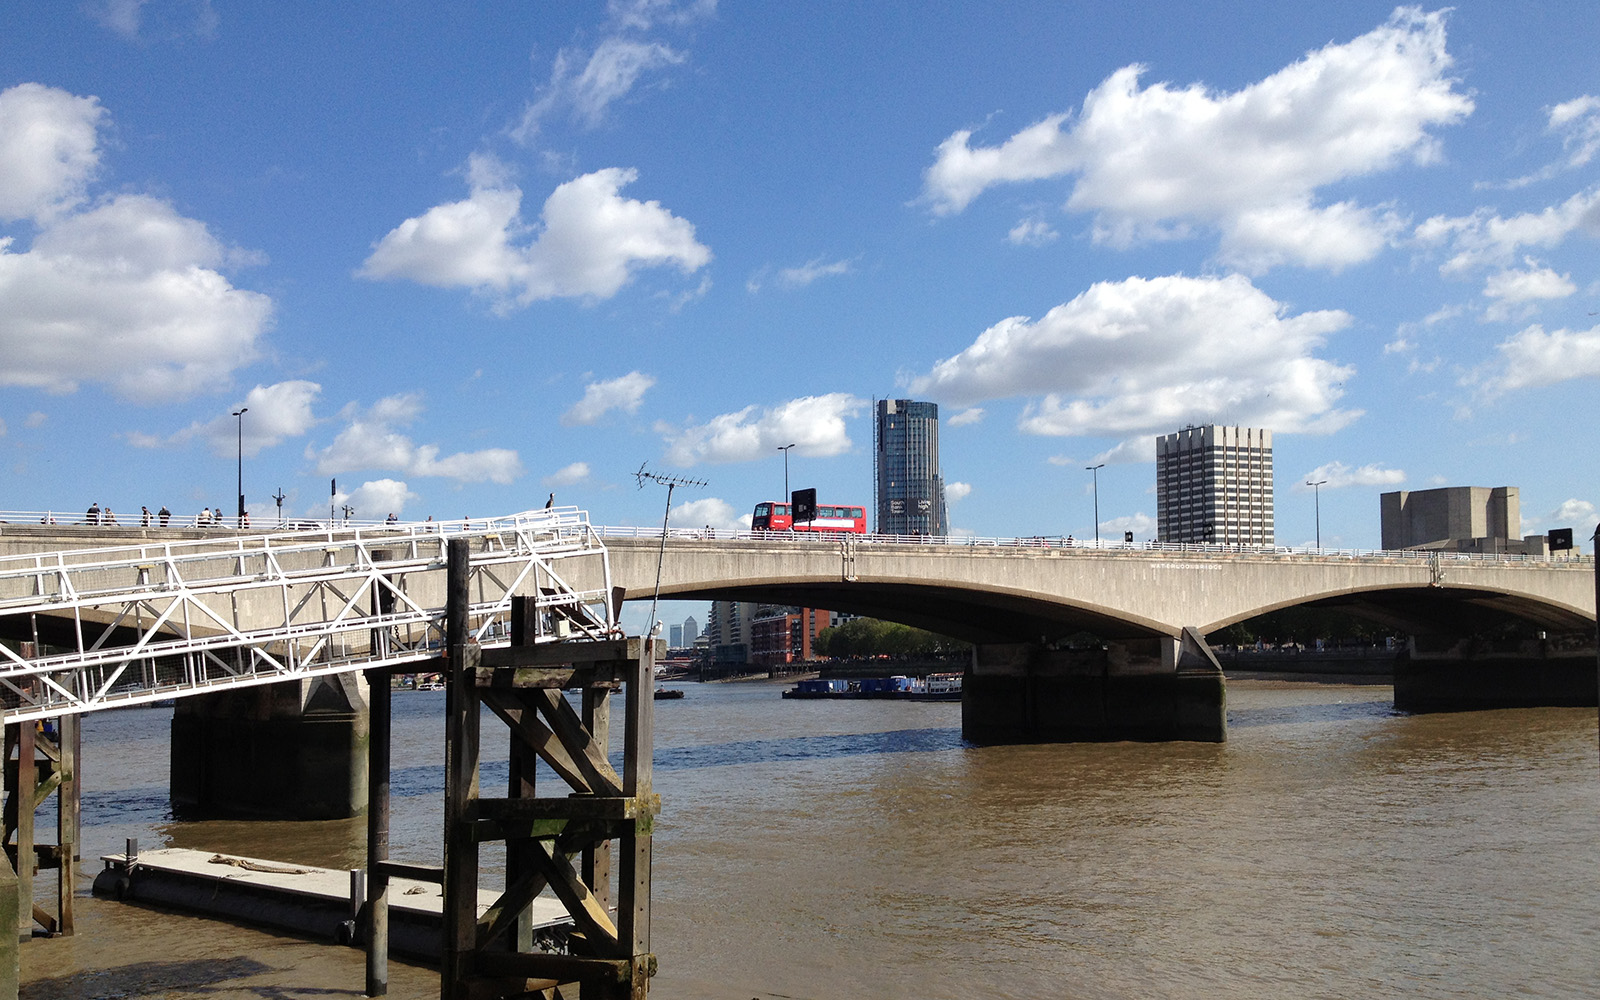 Waterloo Bridge 5 September 2015